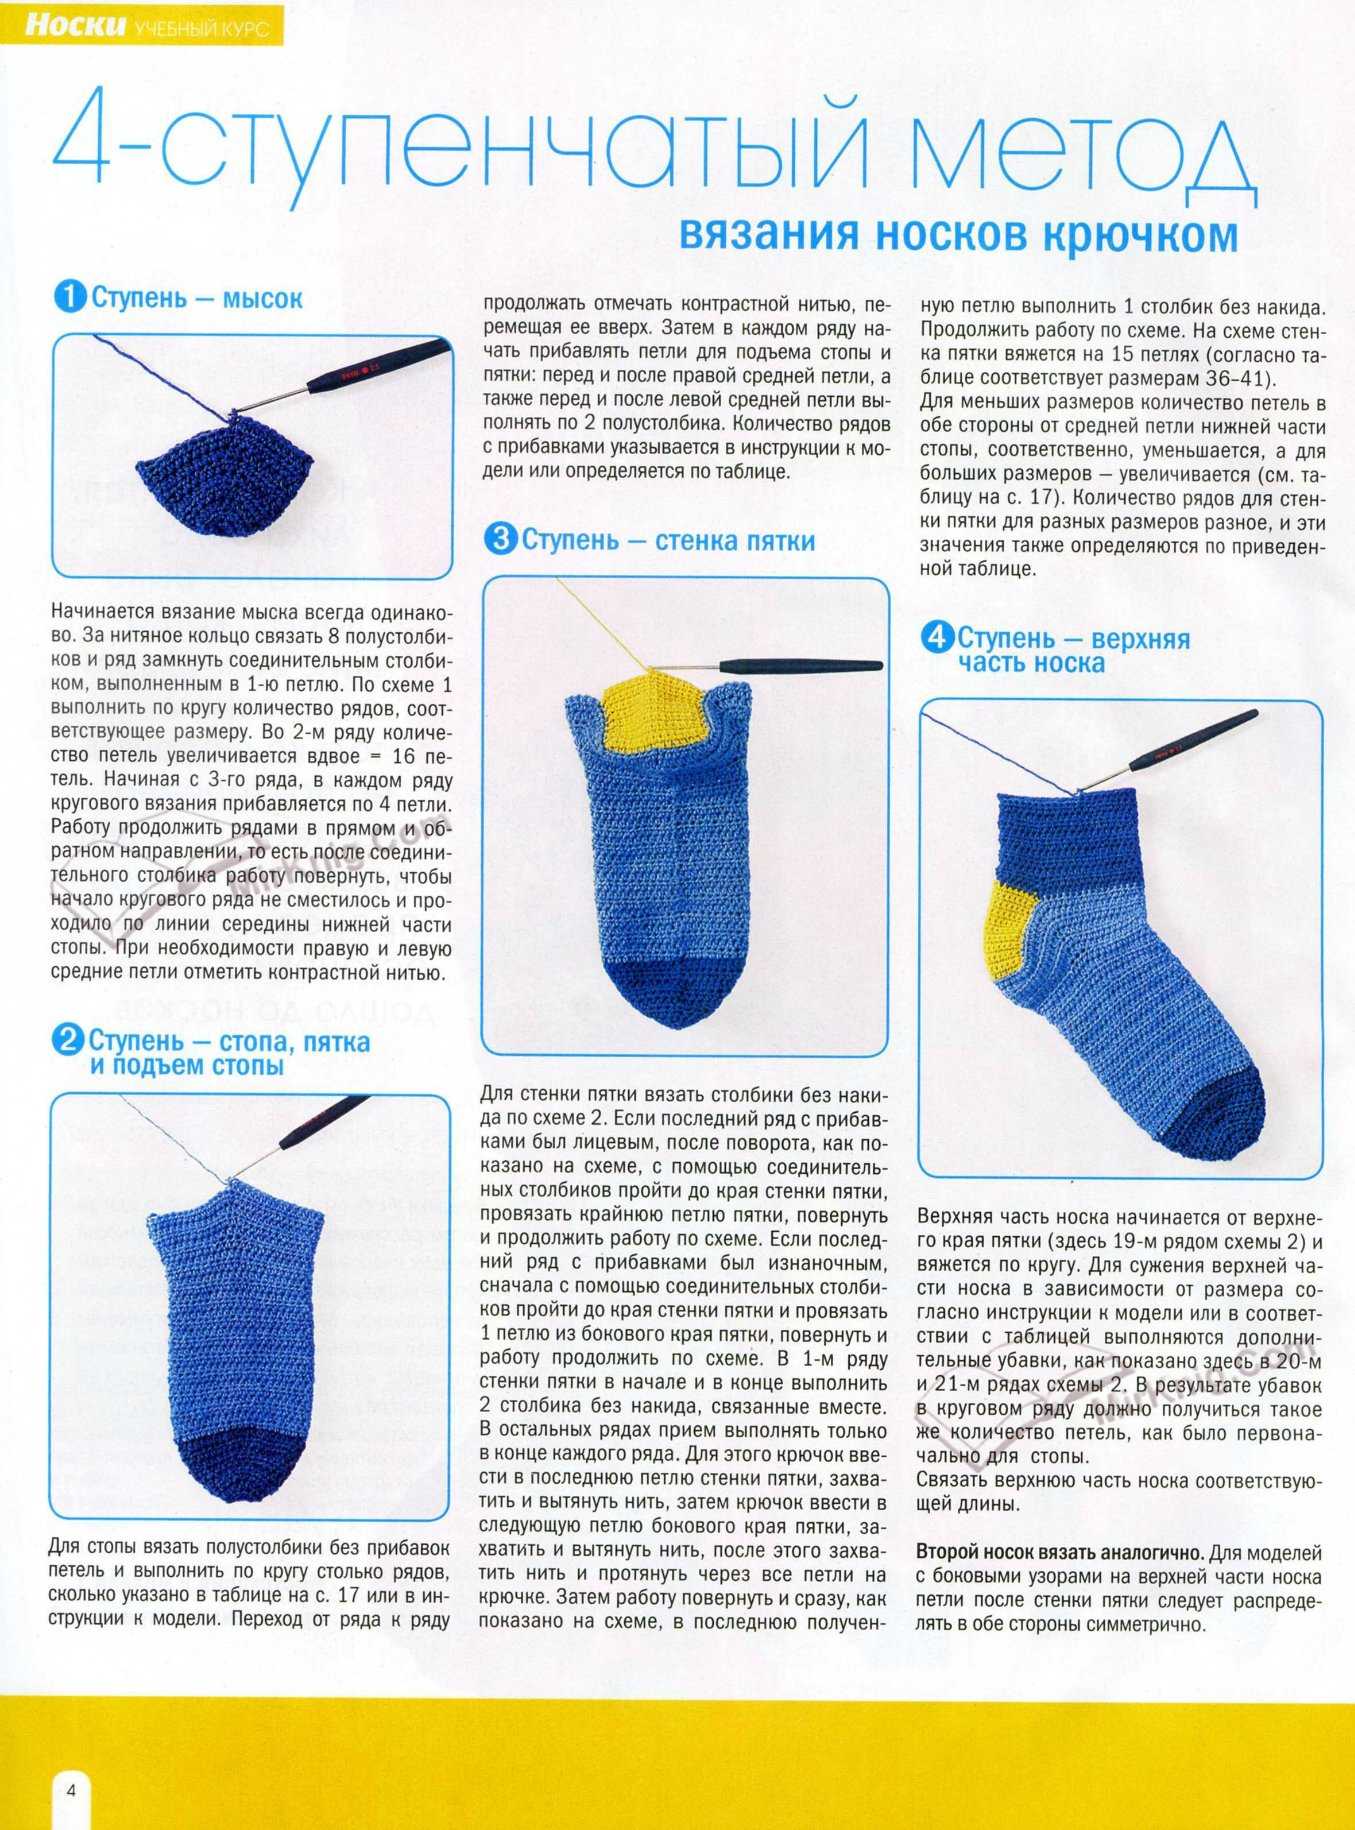 Вязание носков на 5 спицах: пошаговый мастер-класс